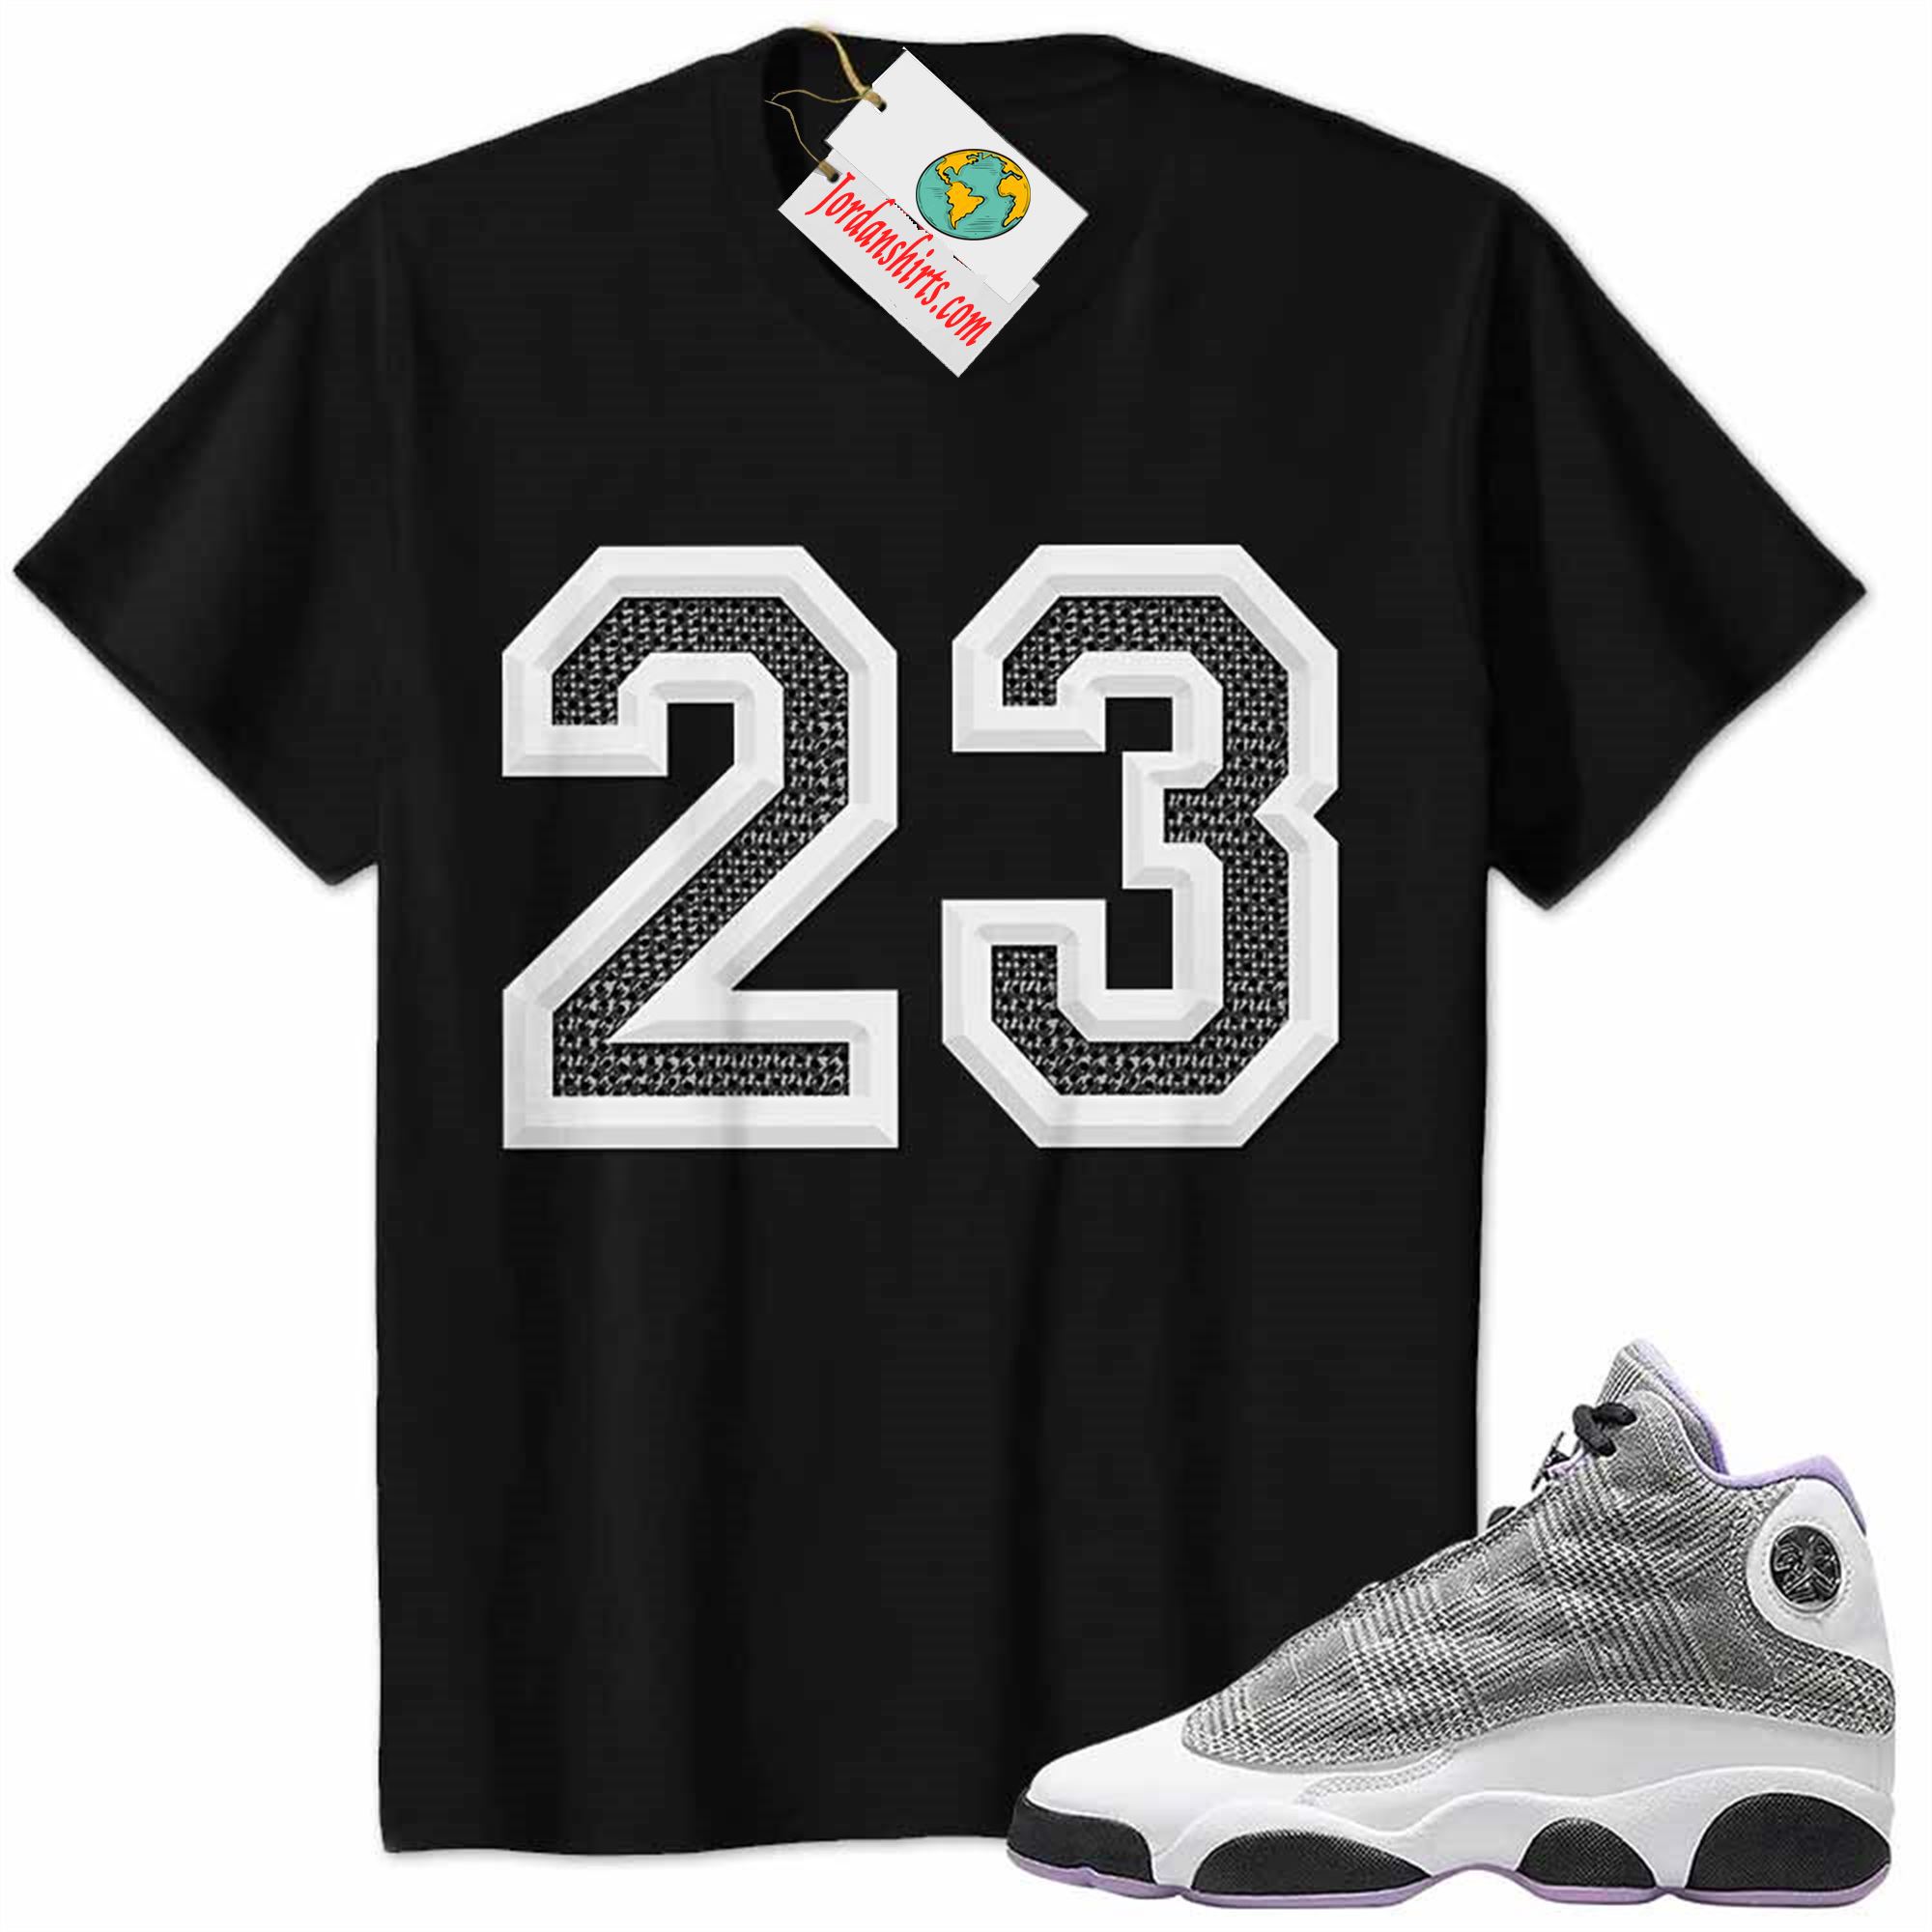 Jordan 13 Shirt, Jordan 13 Houndstooth Shirt Michael Jordan Number 23 Black Size Up To 5xl